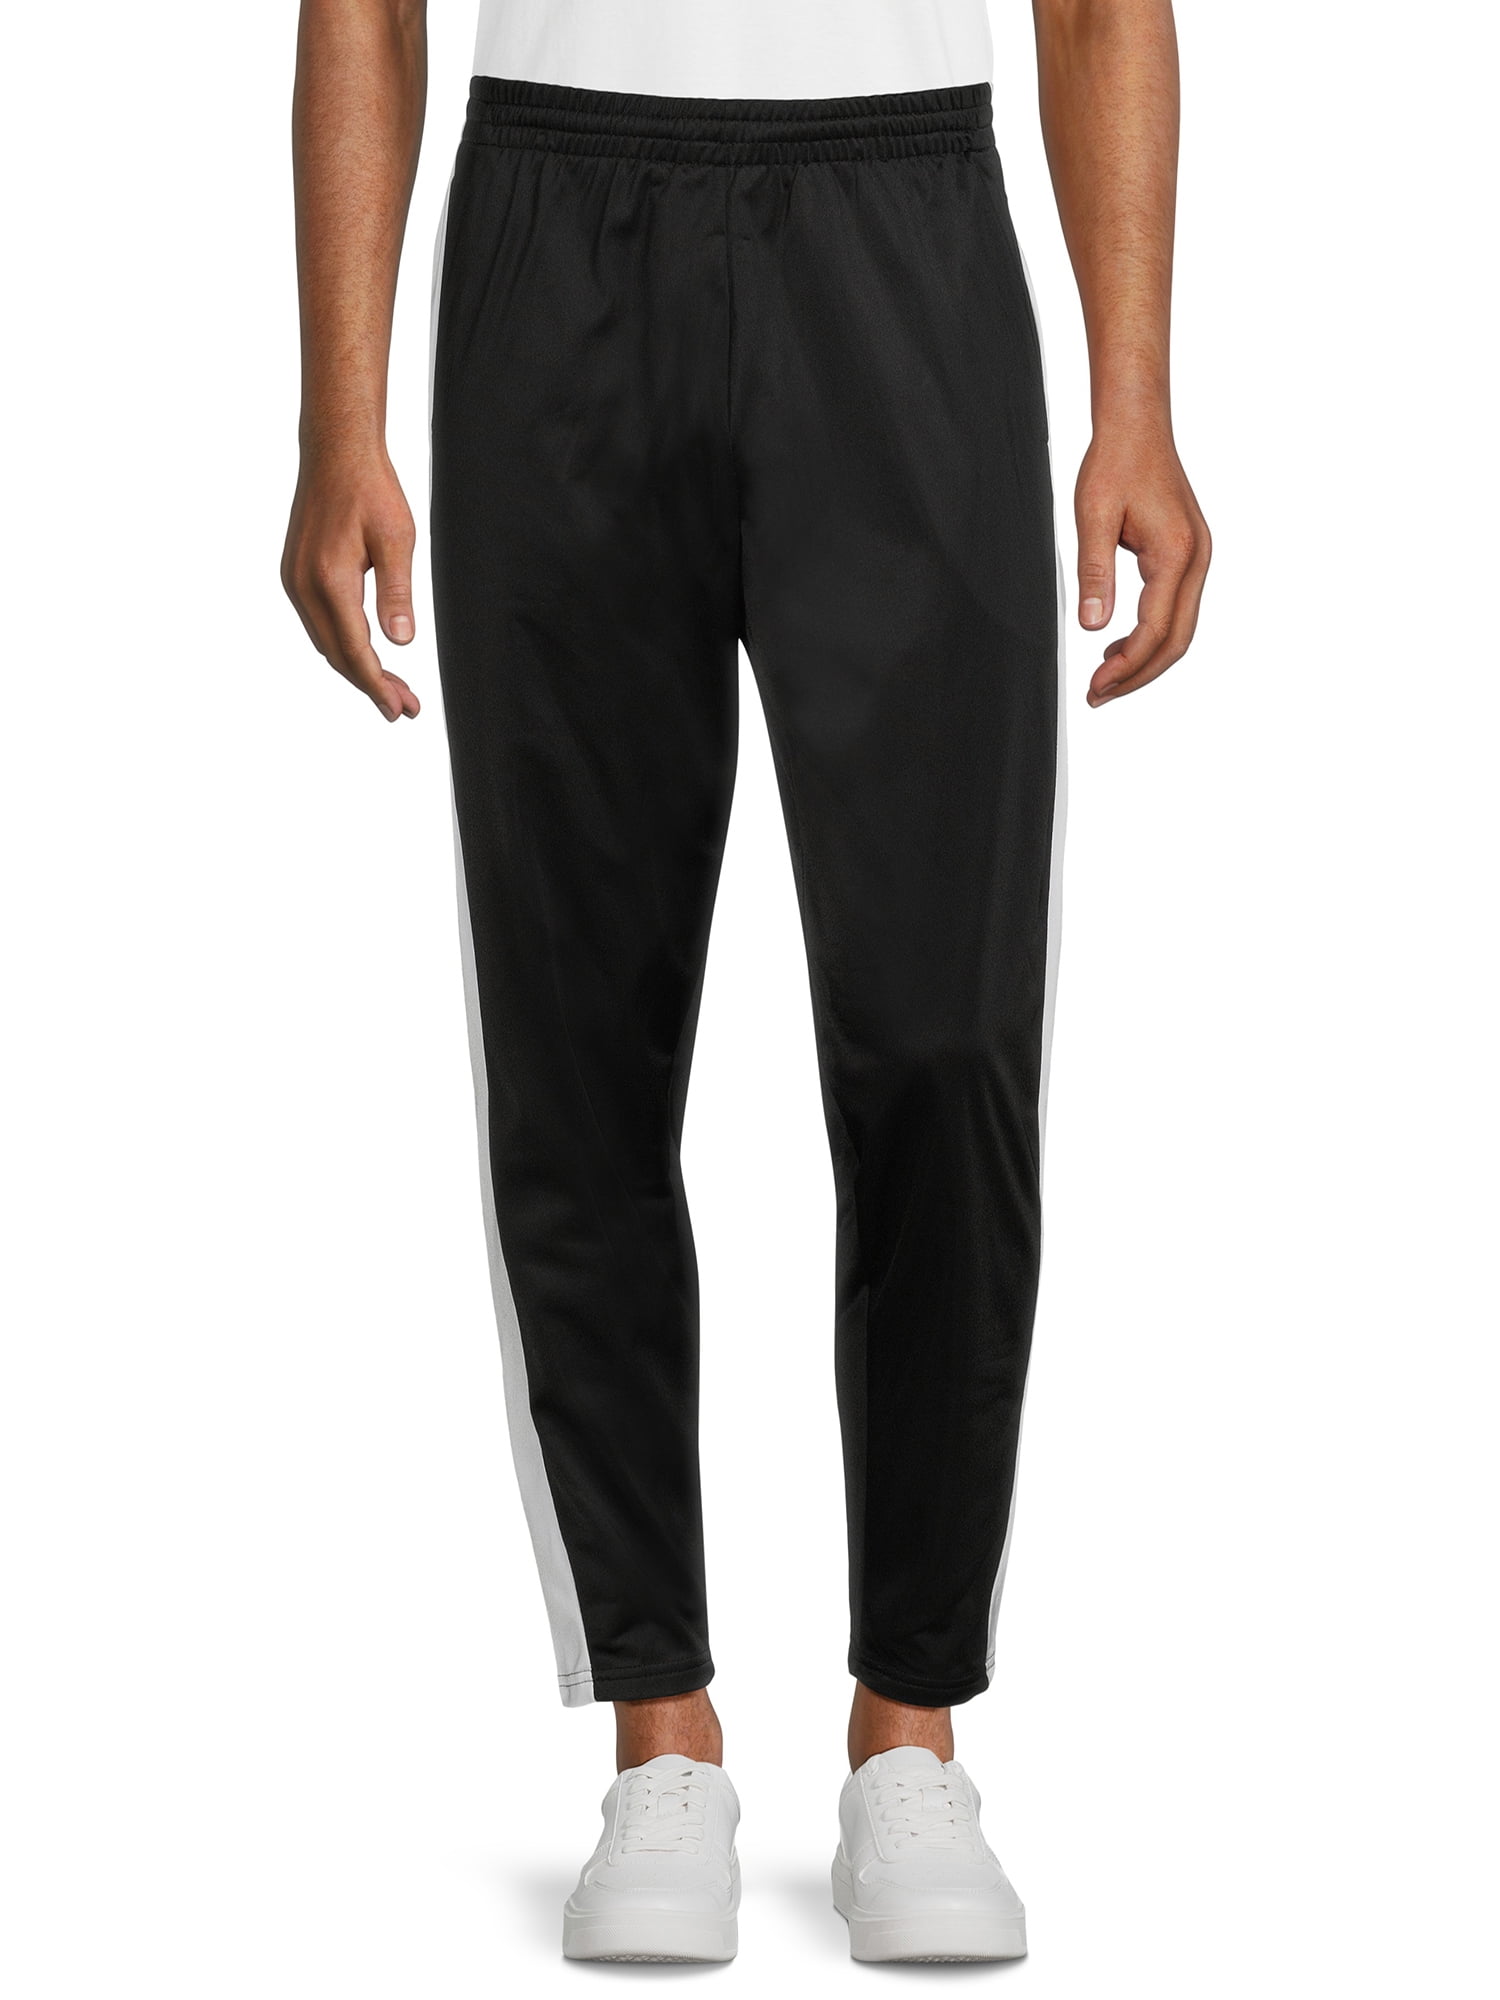 I5 Apparel Men’s Active Tricot Pants, Sizes M-2XL - Walmart.com